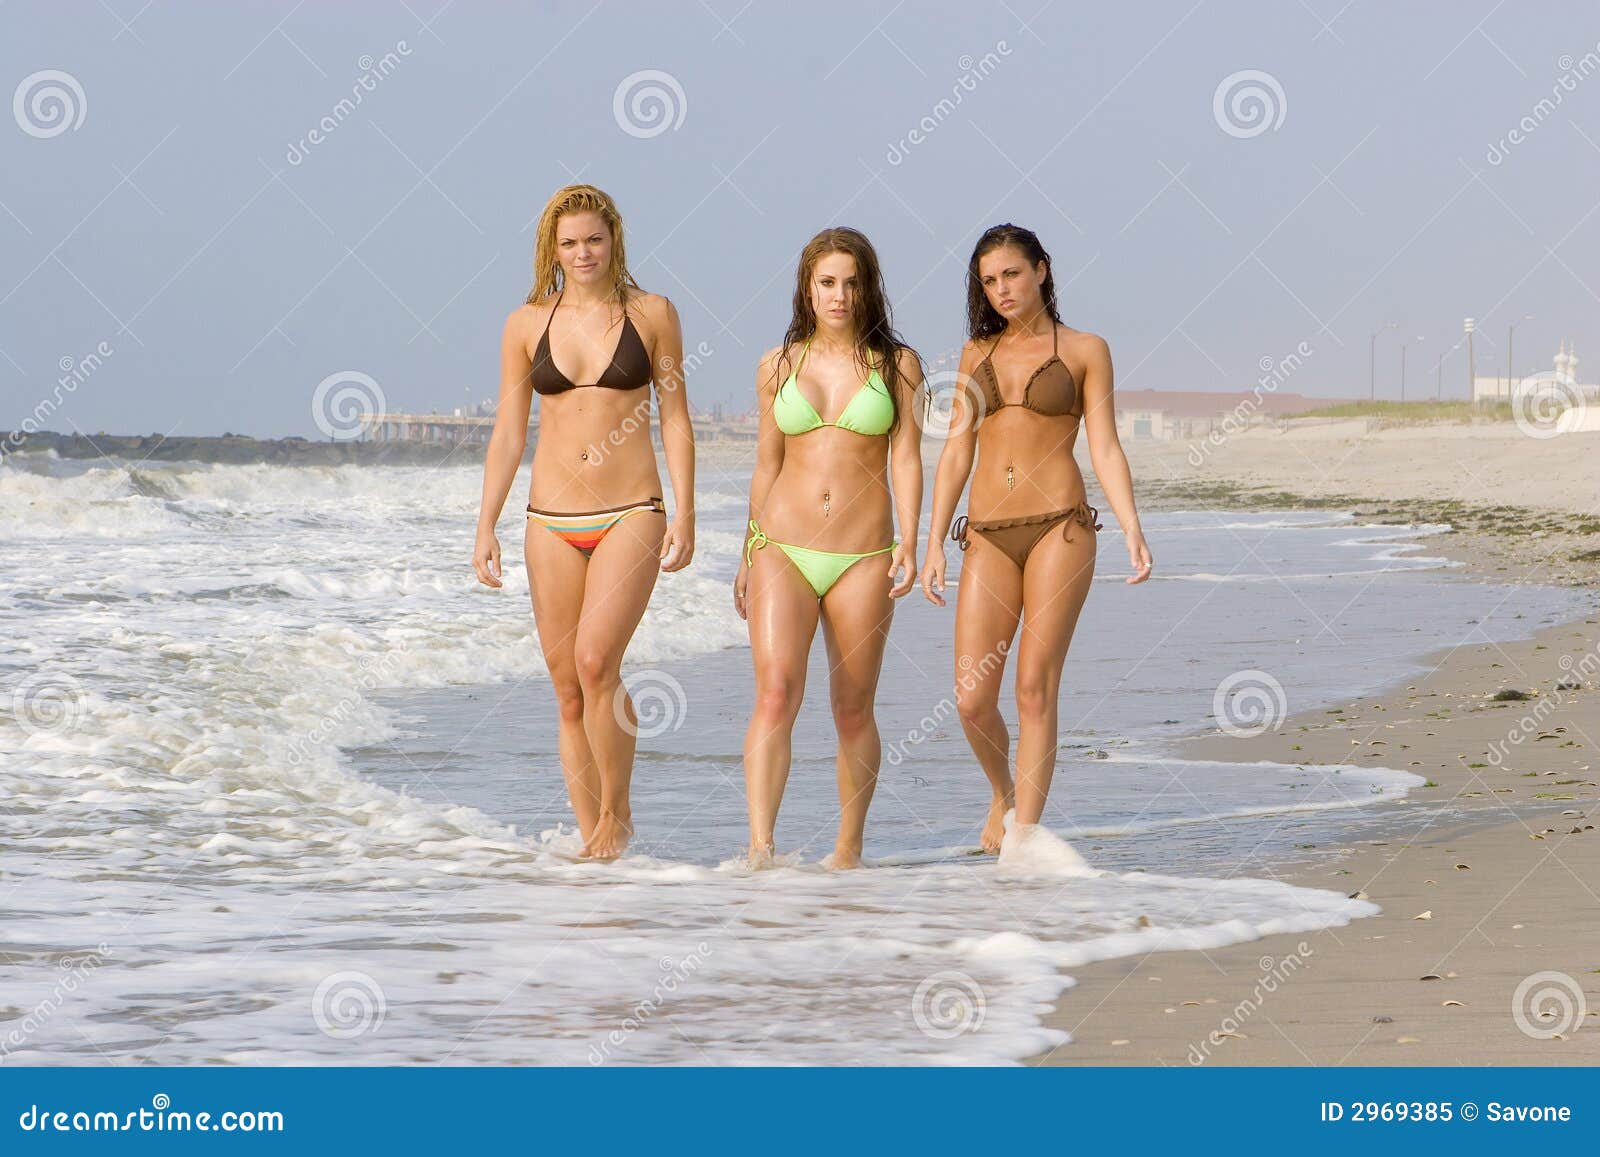 bikini-beach-2969385.jpg